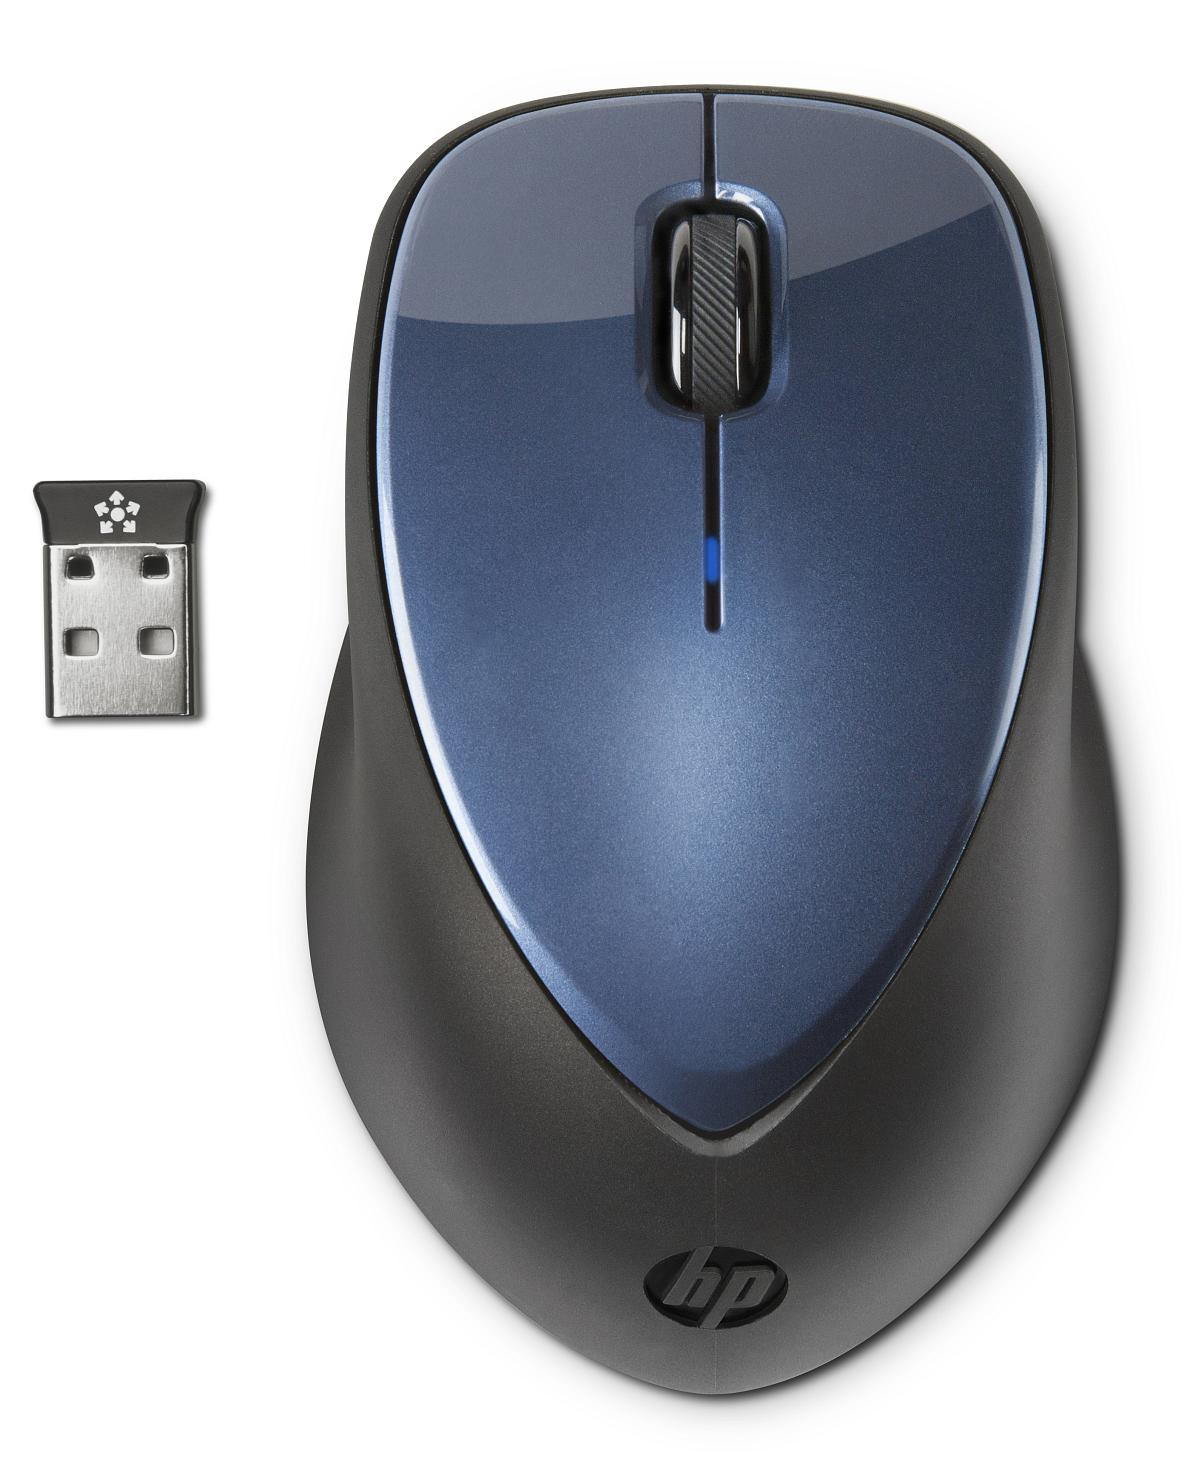 Bezdrôtová myš HP x4000 - zimní modrá (H1D34AA)